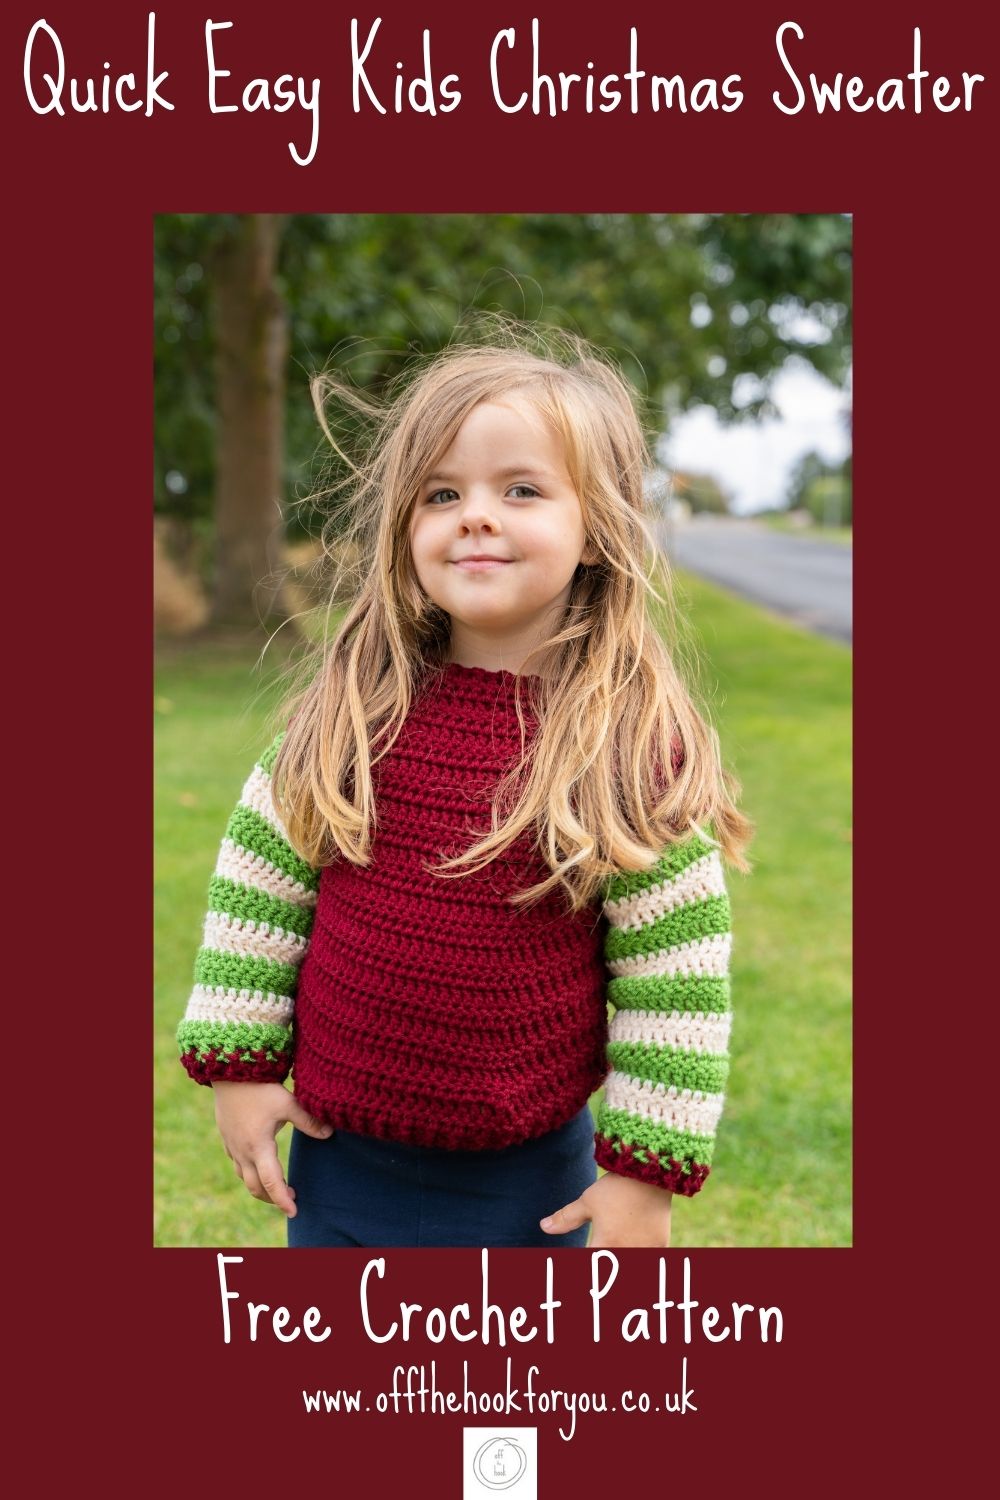 easy crochet Christmas kids sweater free pattern